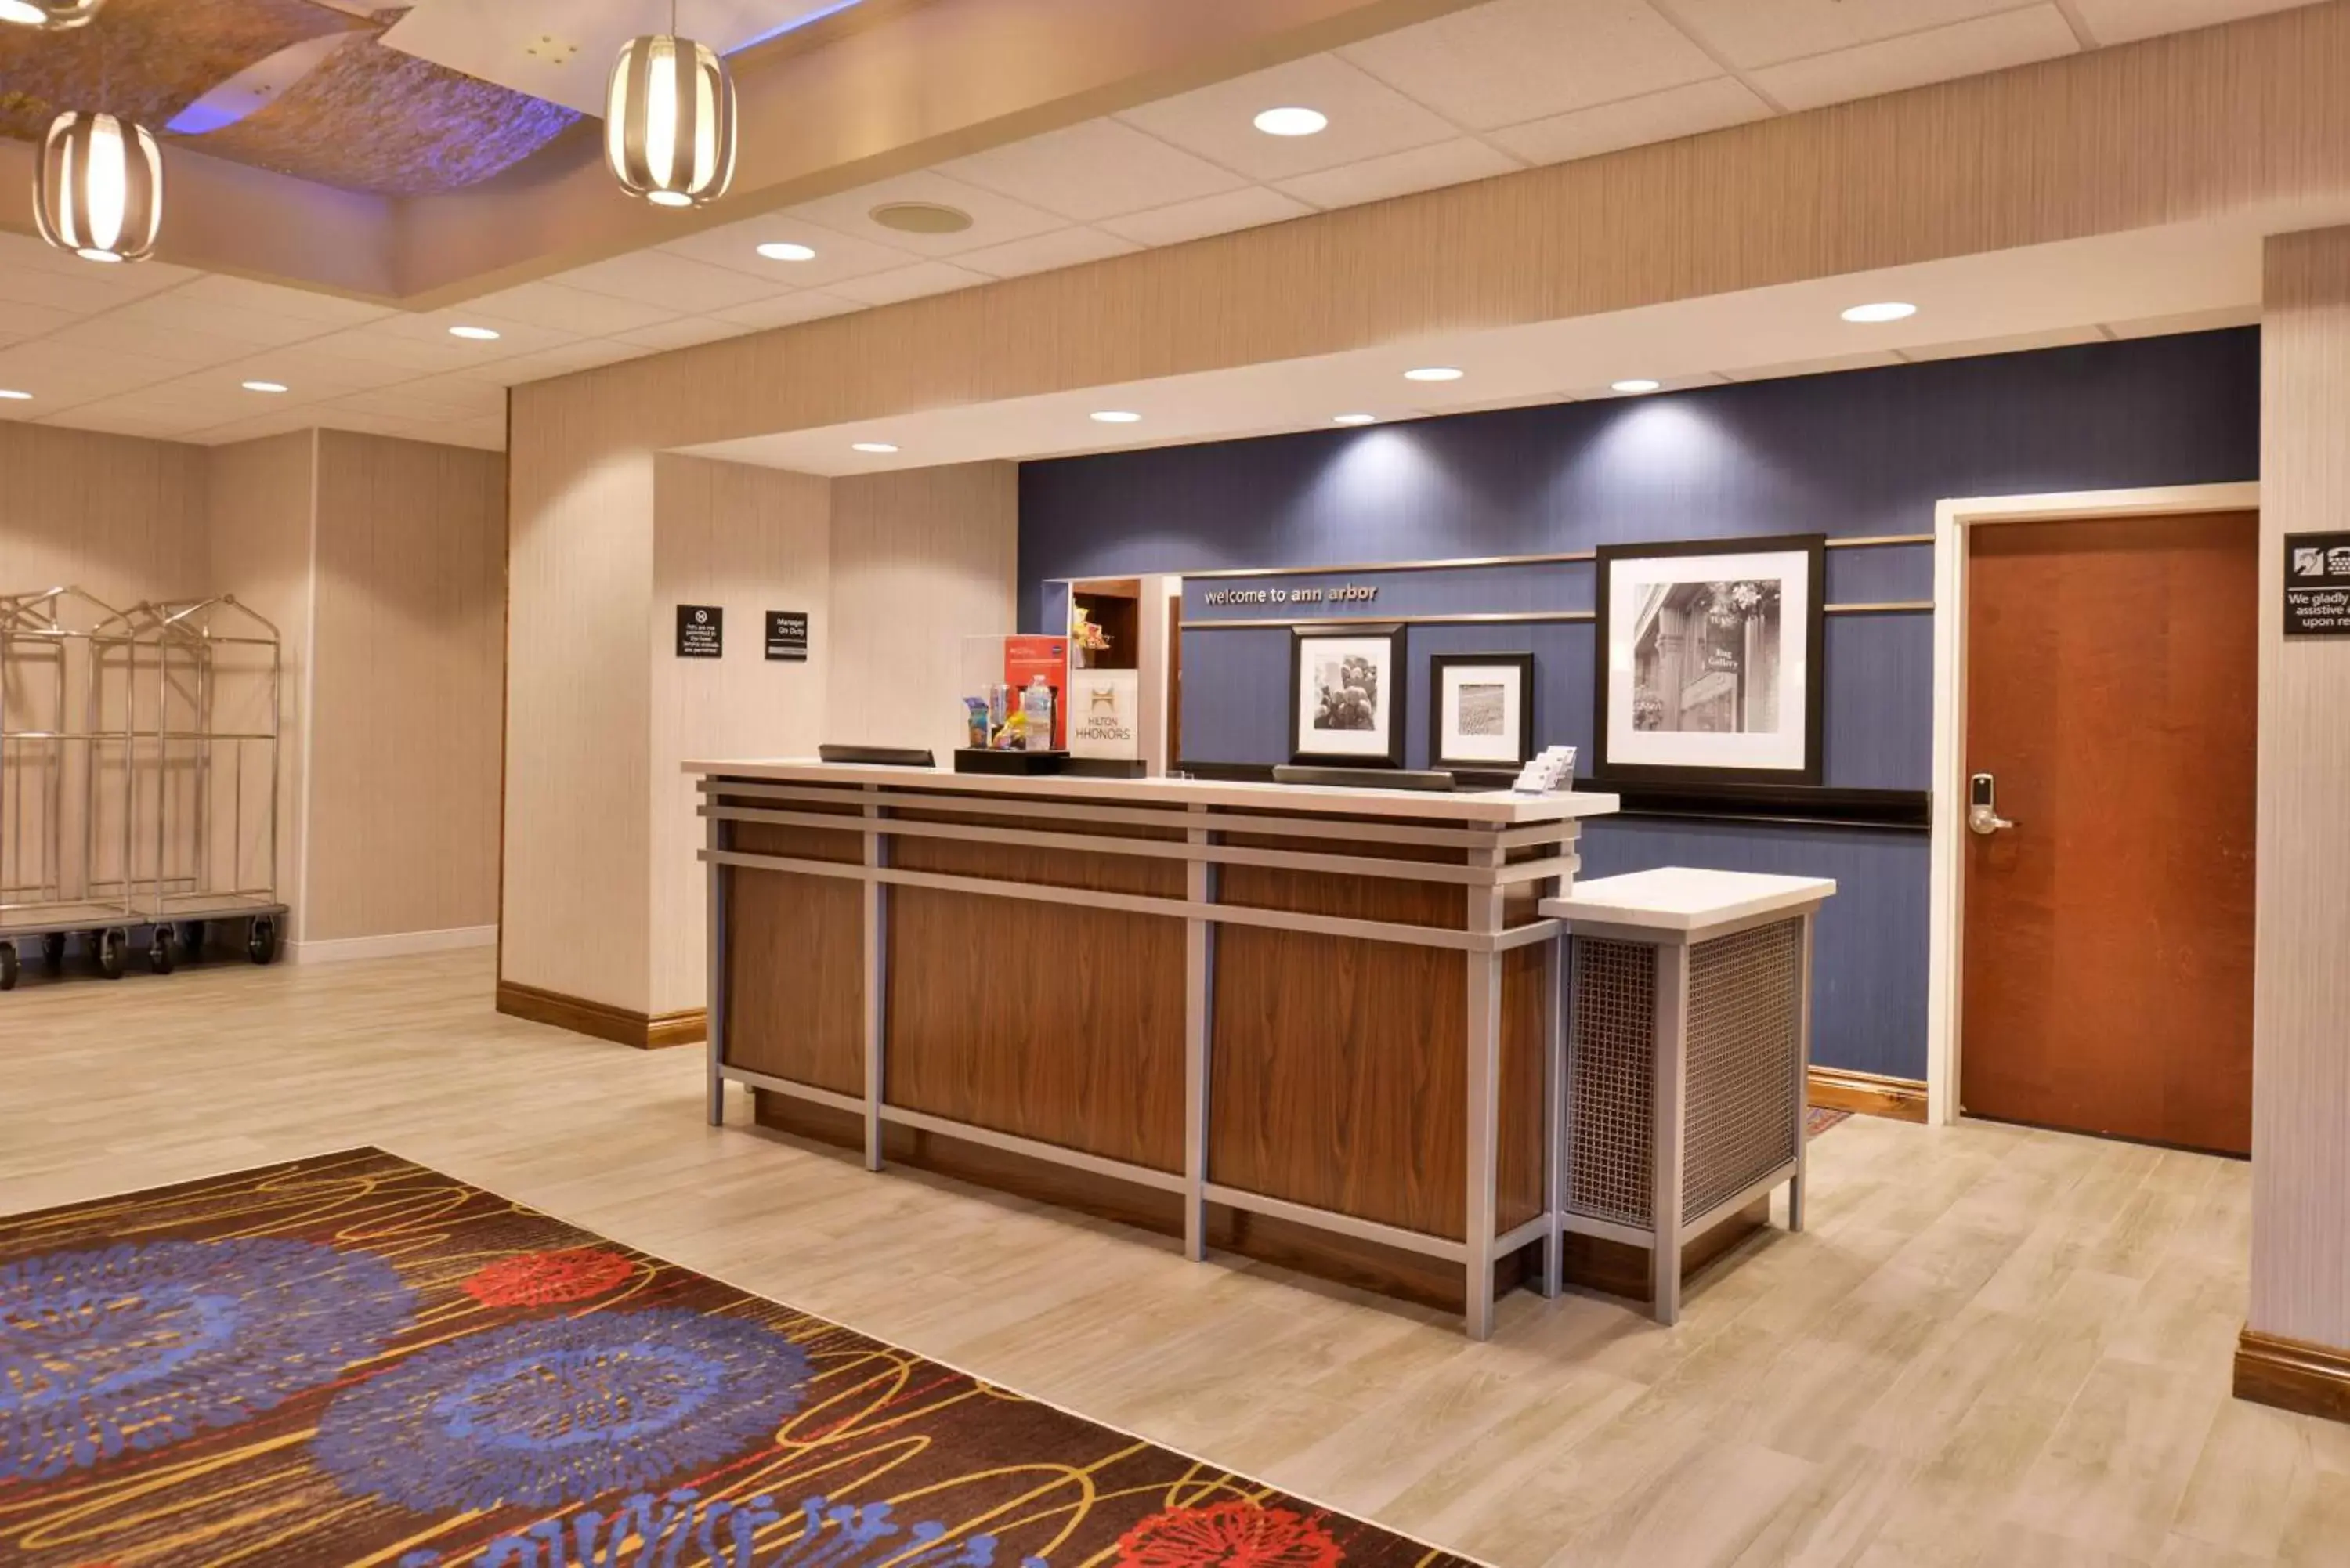 Lobby or reception, Lobby/Reception in Hampton Inn & Suites Ann Arbor West